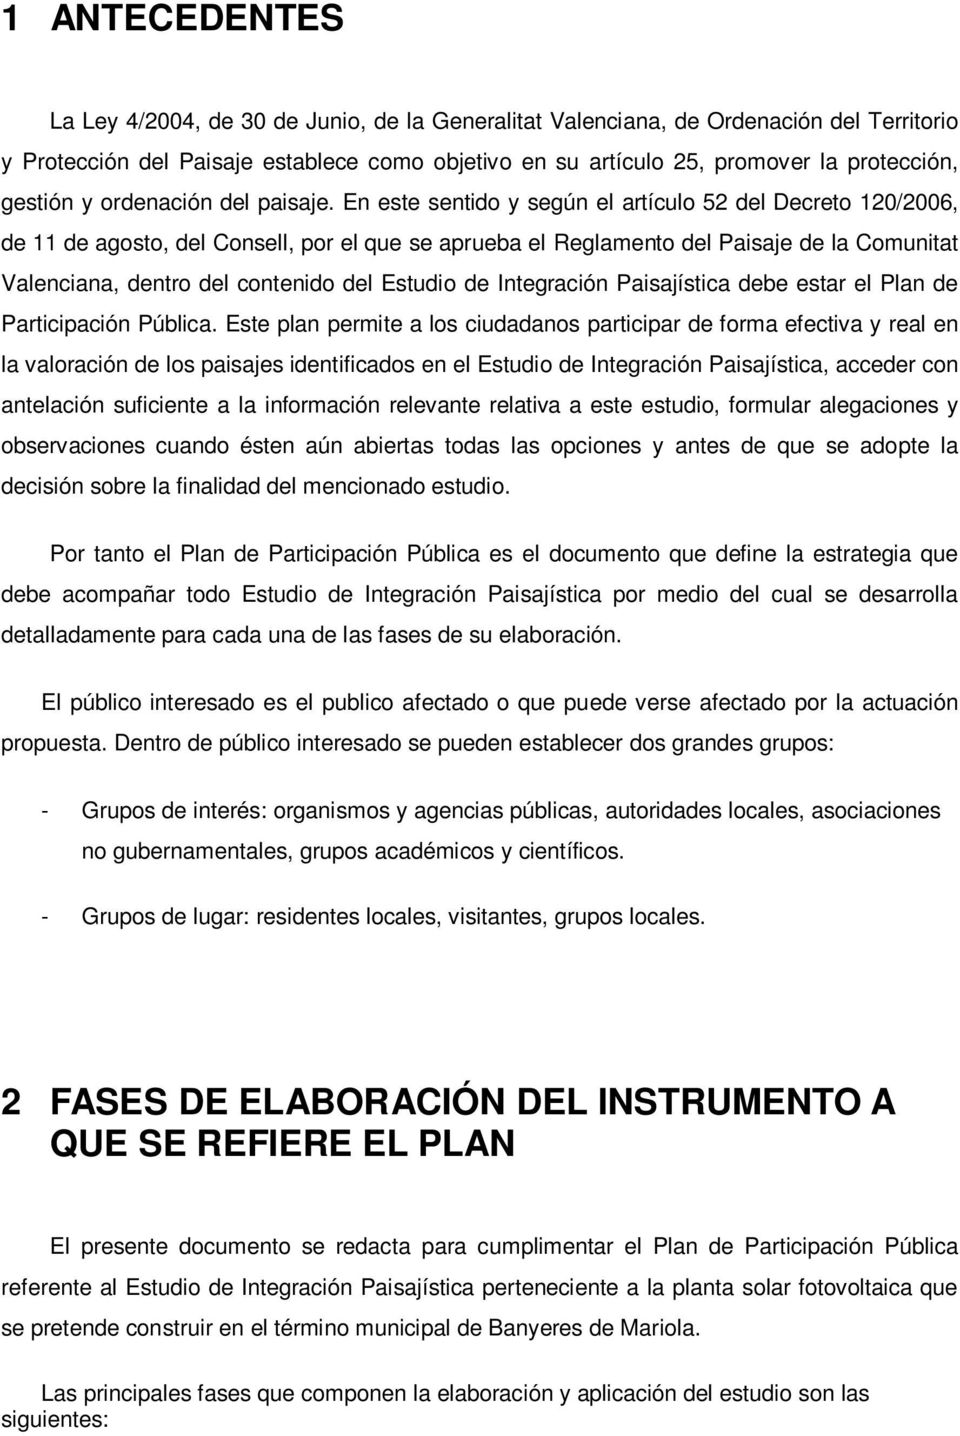 En este sentido y según el artículo 52 del Decreto 120/2006, de 11 de agosto, del Consell, por el que se aprueba el Reglamento del Paisaje de la Comunitat Valenciana, dentro del contenido del Estudio